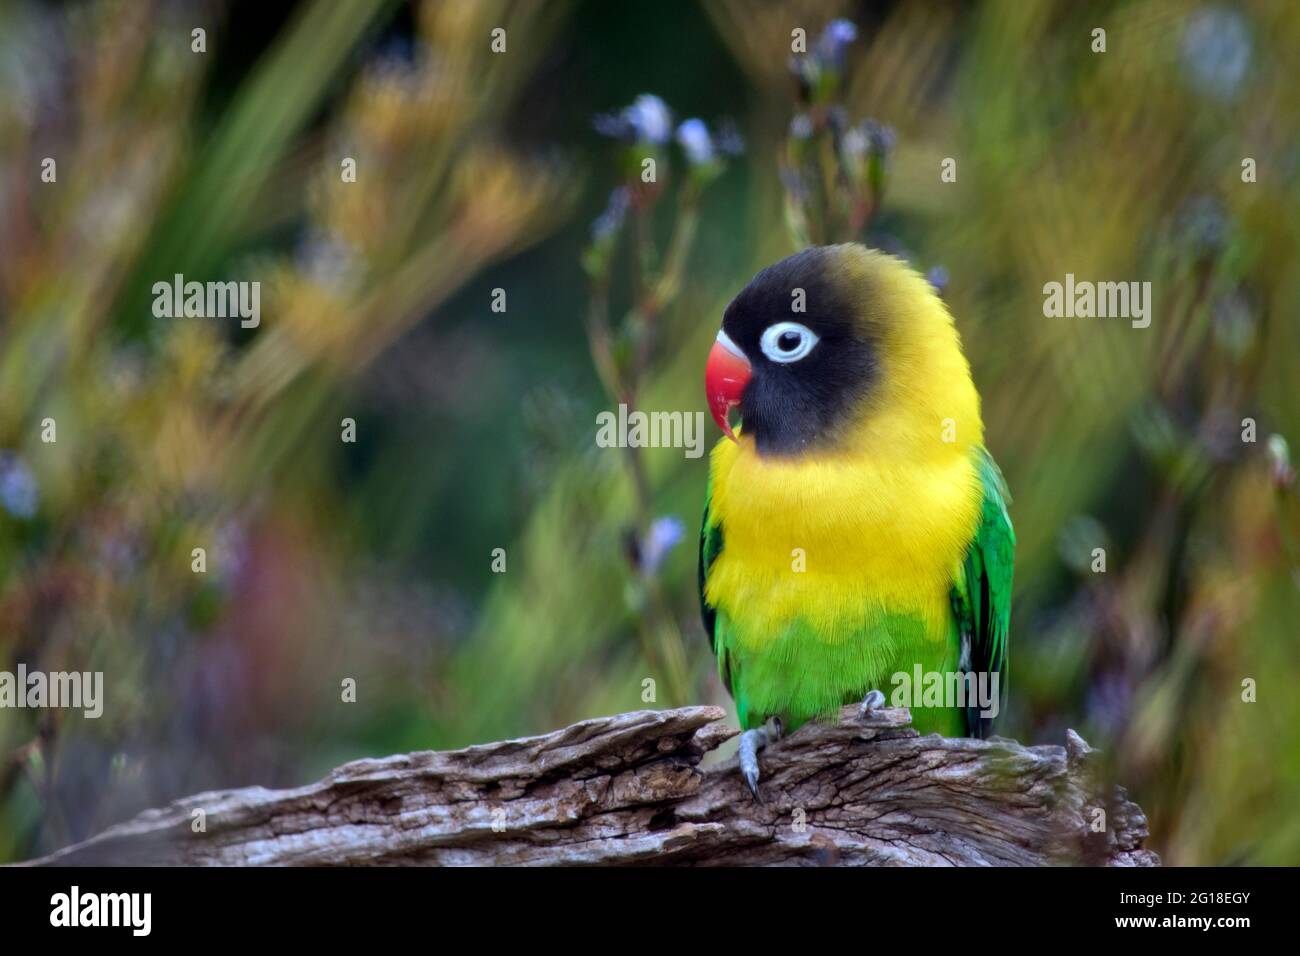 Der maskierte Lovebird hat einen orangefarbenen Schnabel, einen weißen Augenring, ein schwarzes Gesicht, eine gelbe Brust und einen grünen Rumpf Stockfoto